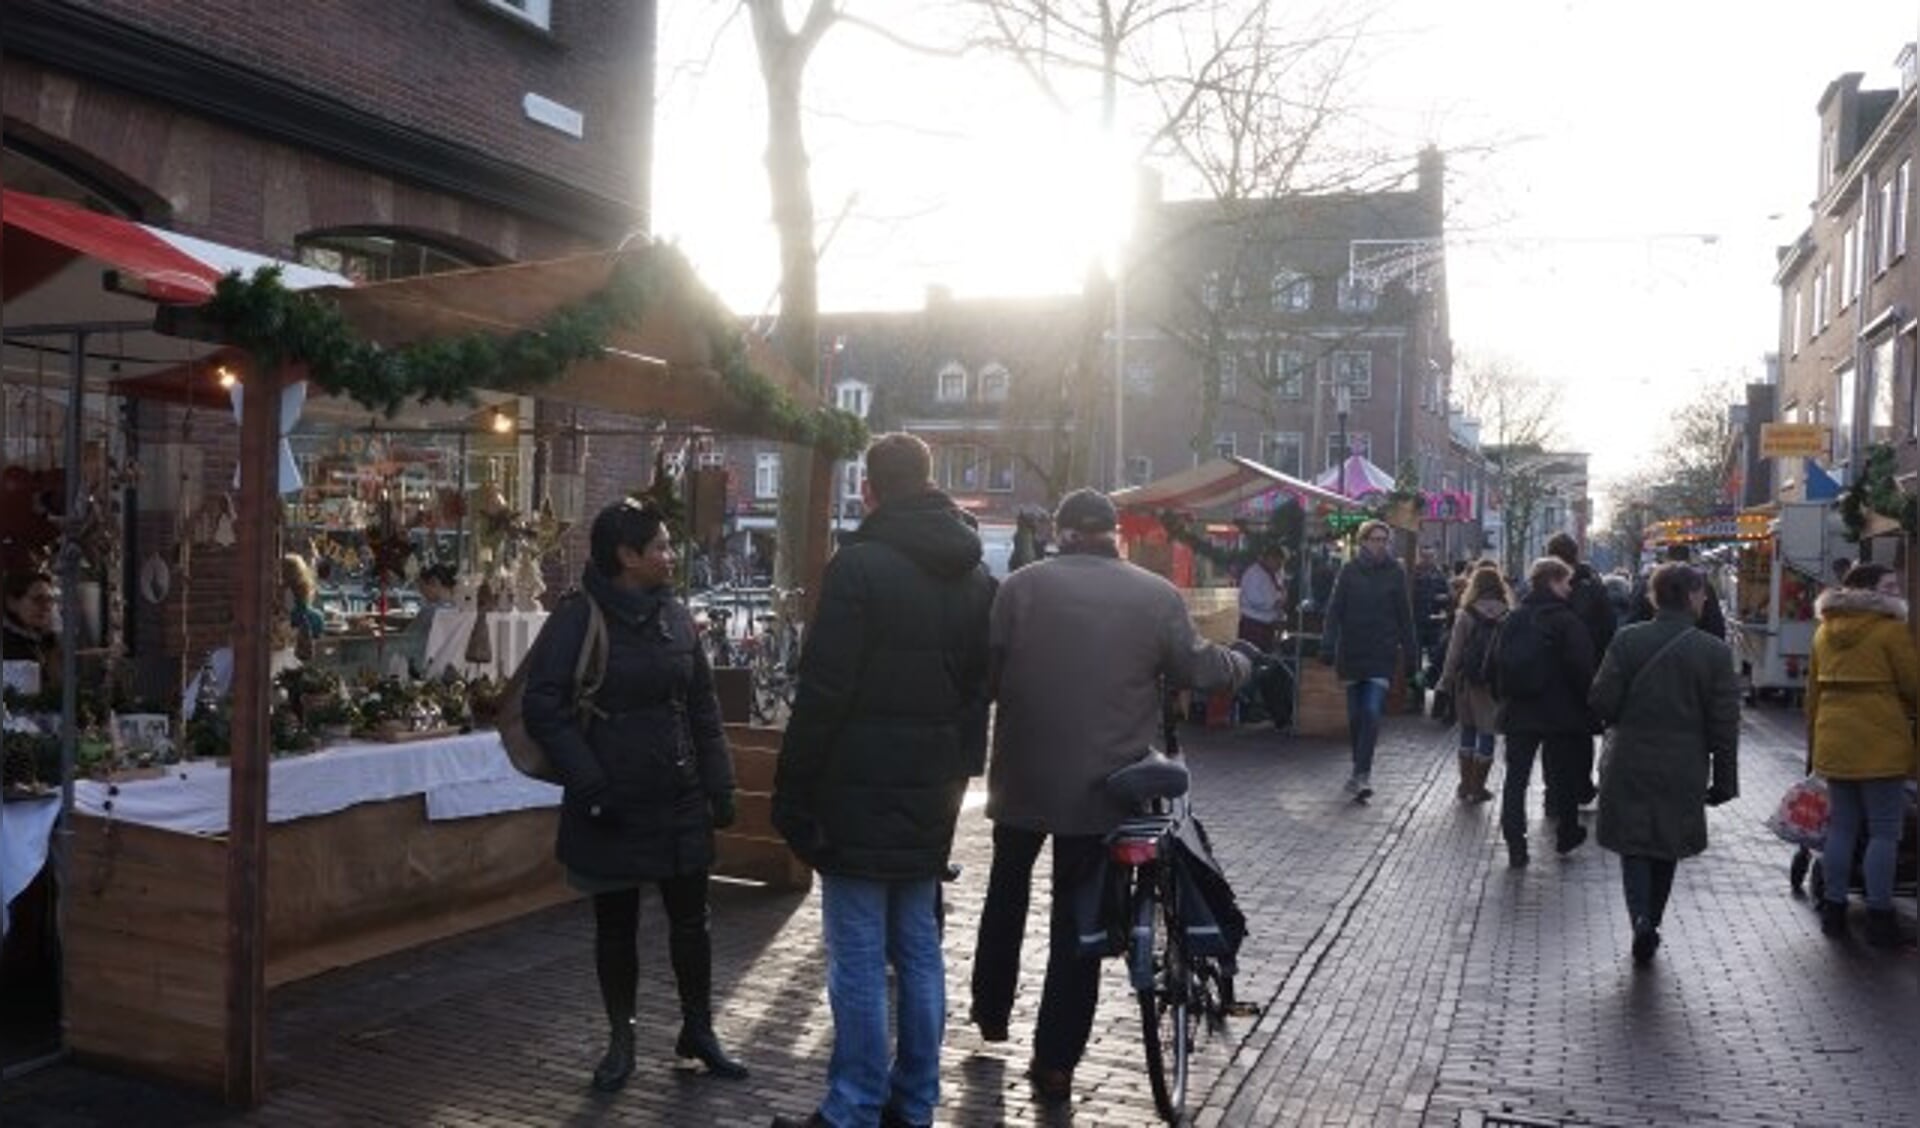 Het lage winterzonnetje gaf extra sfeer, hier bijvoorbeeld in de Hoogstraat bij de Markt.